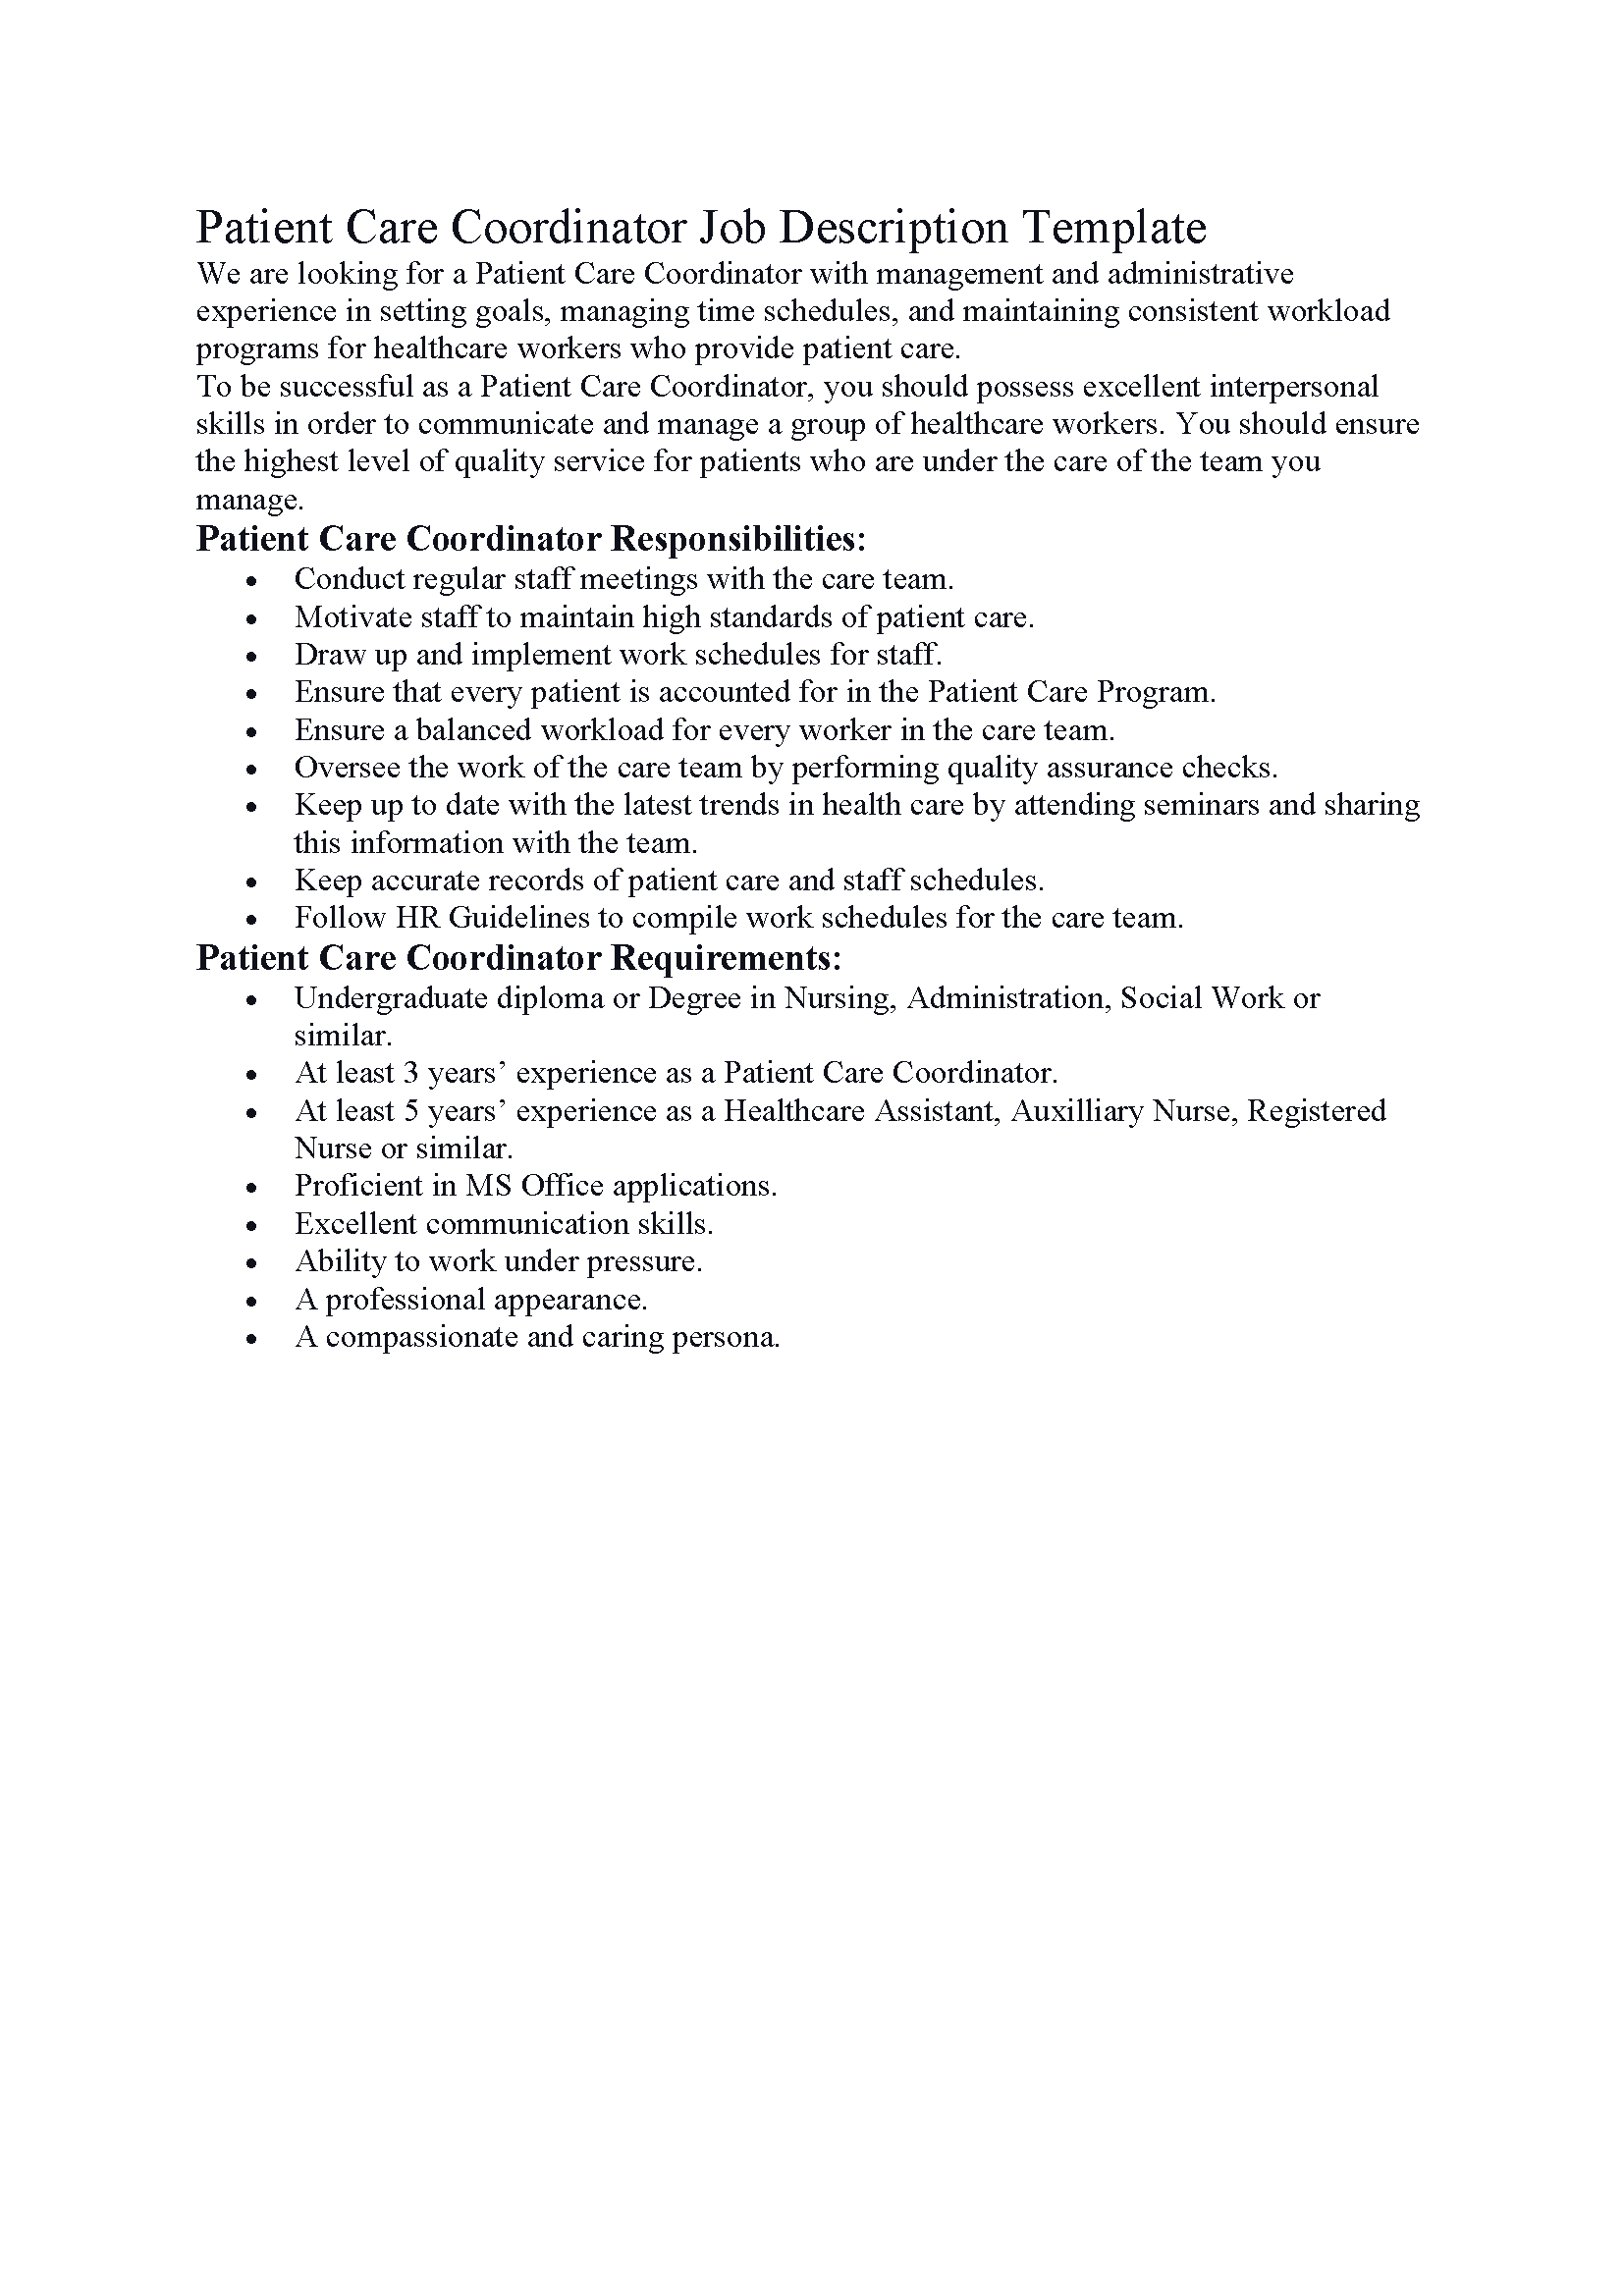 Patient Care Coordinator Job Description Template